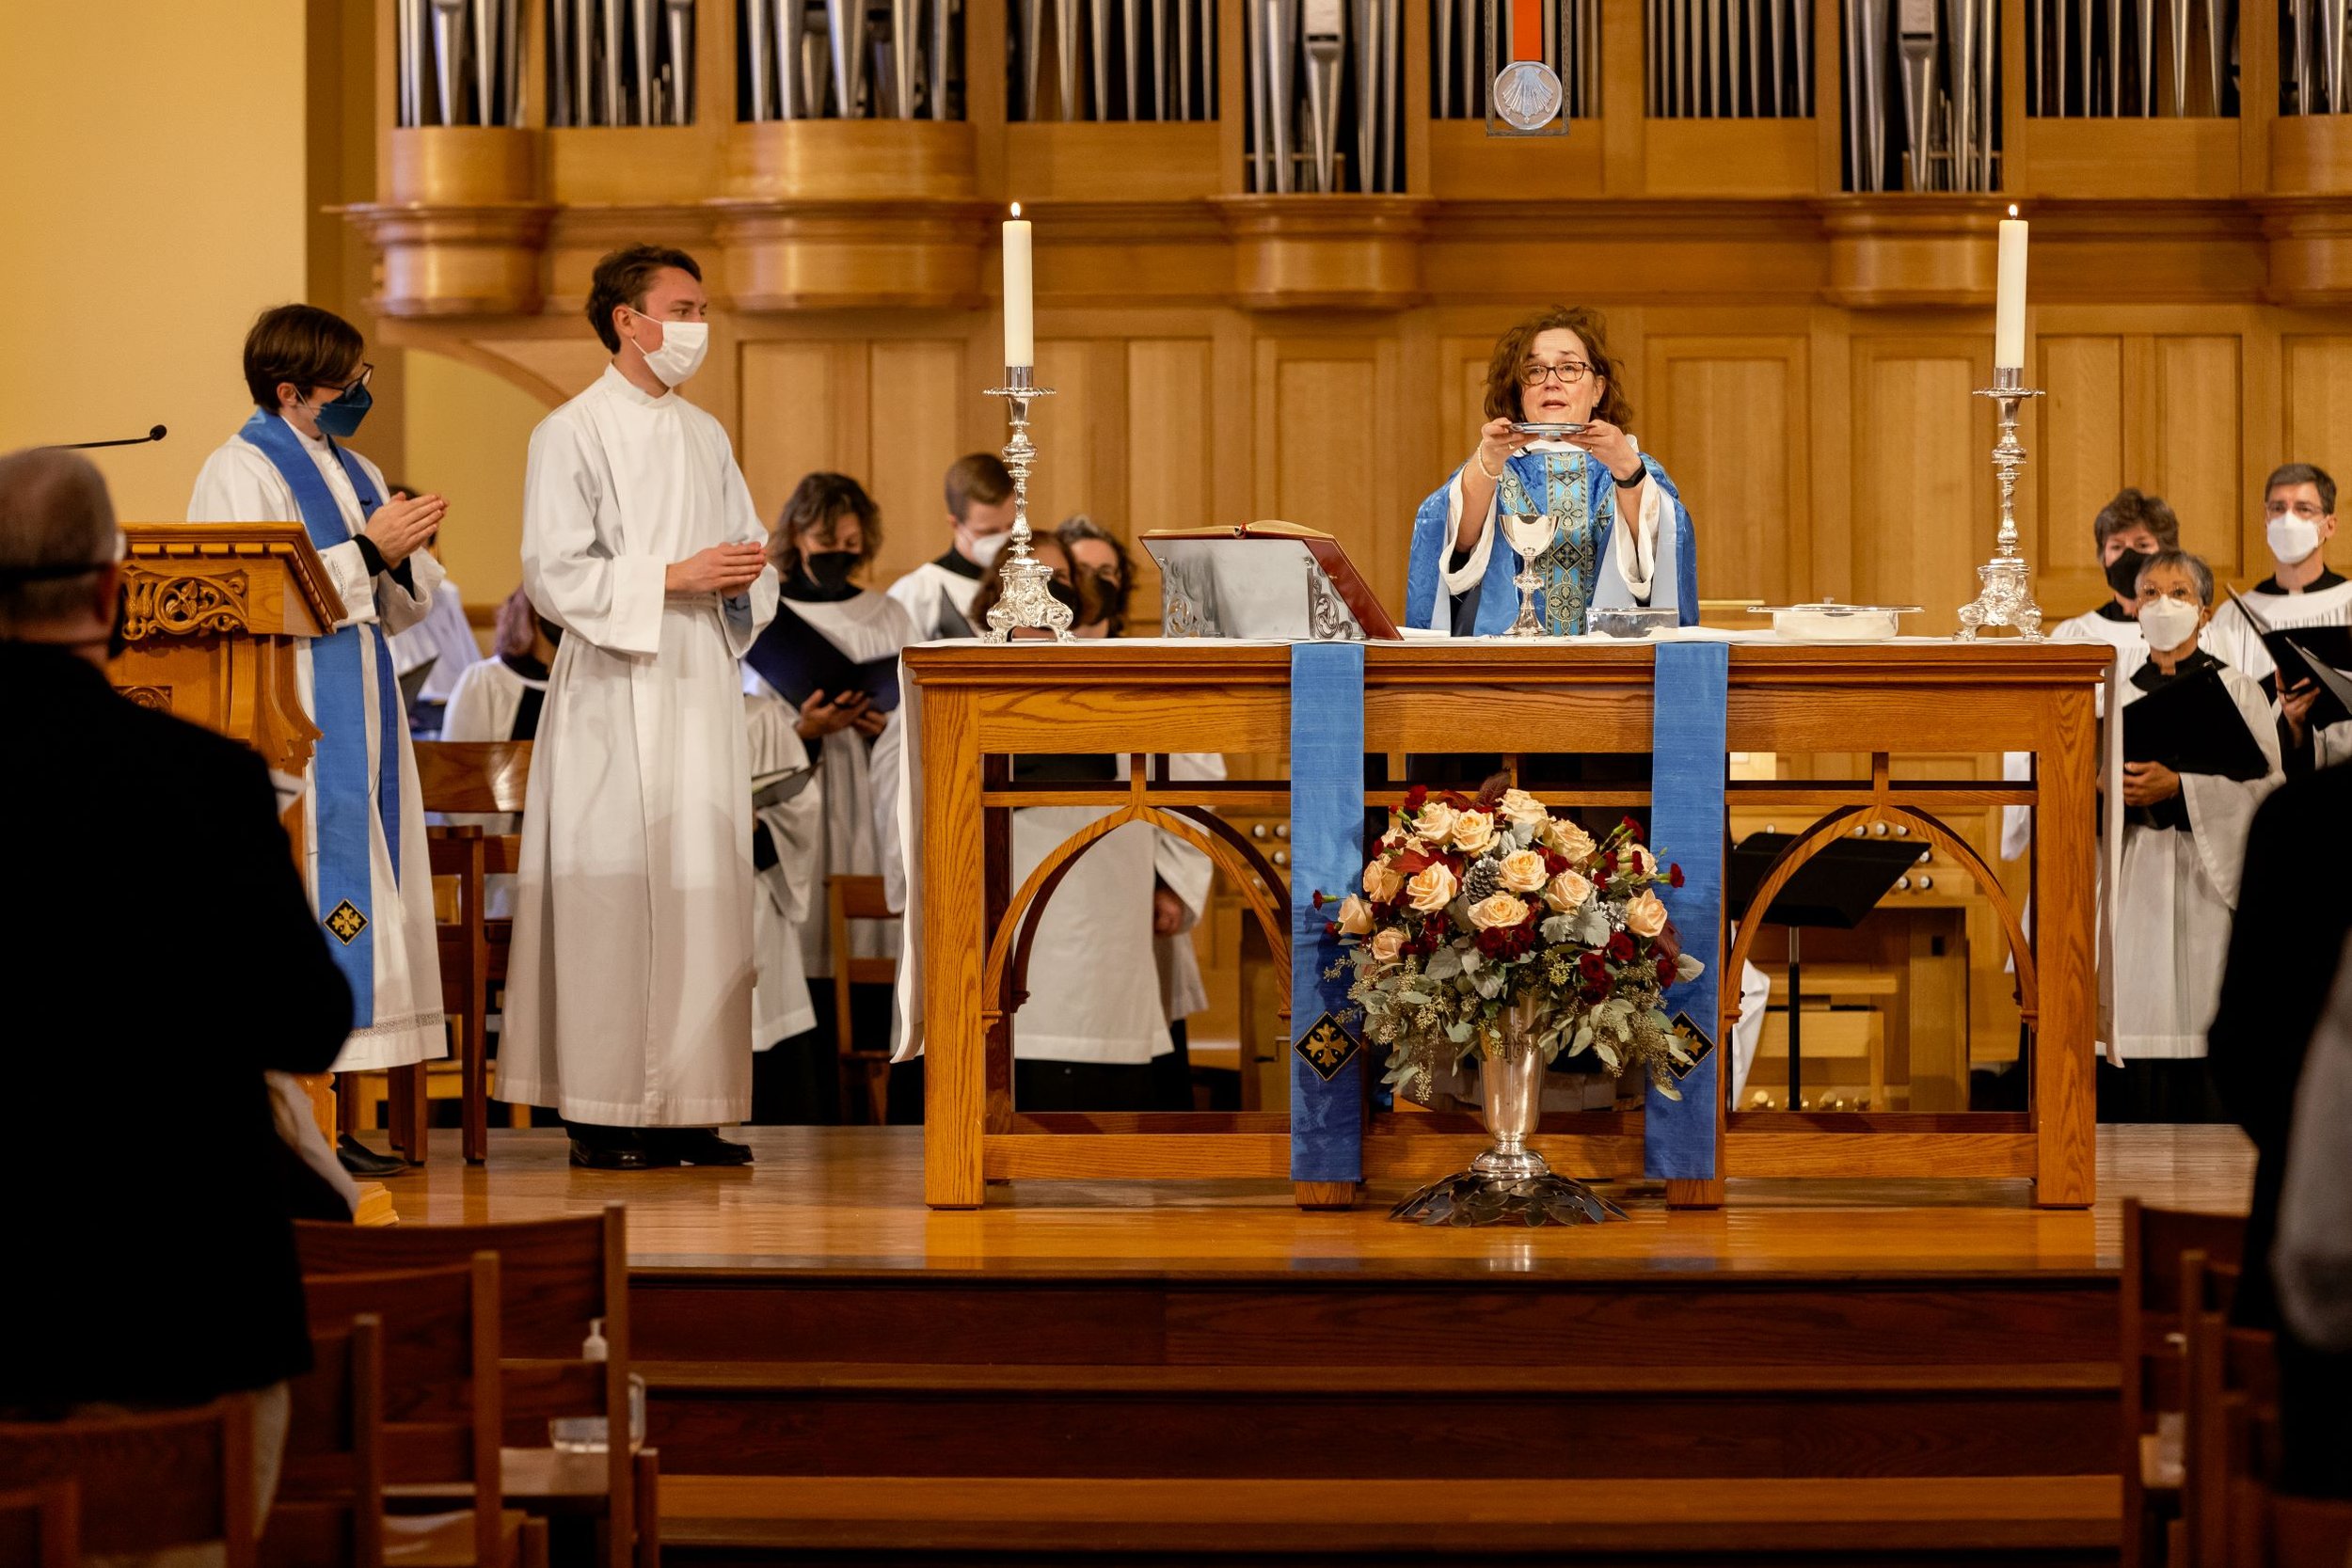 Saint Georges Priests at Altar with Choir Dec 2021 - web version.jpg